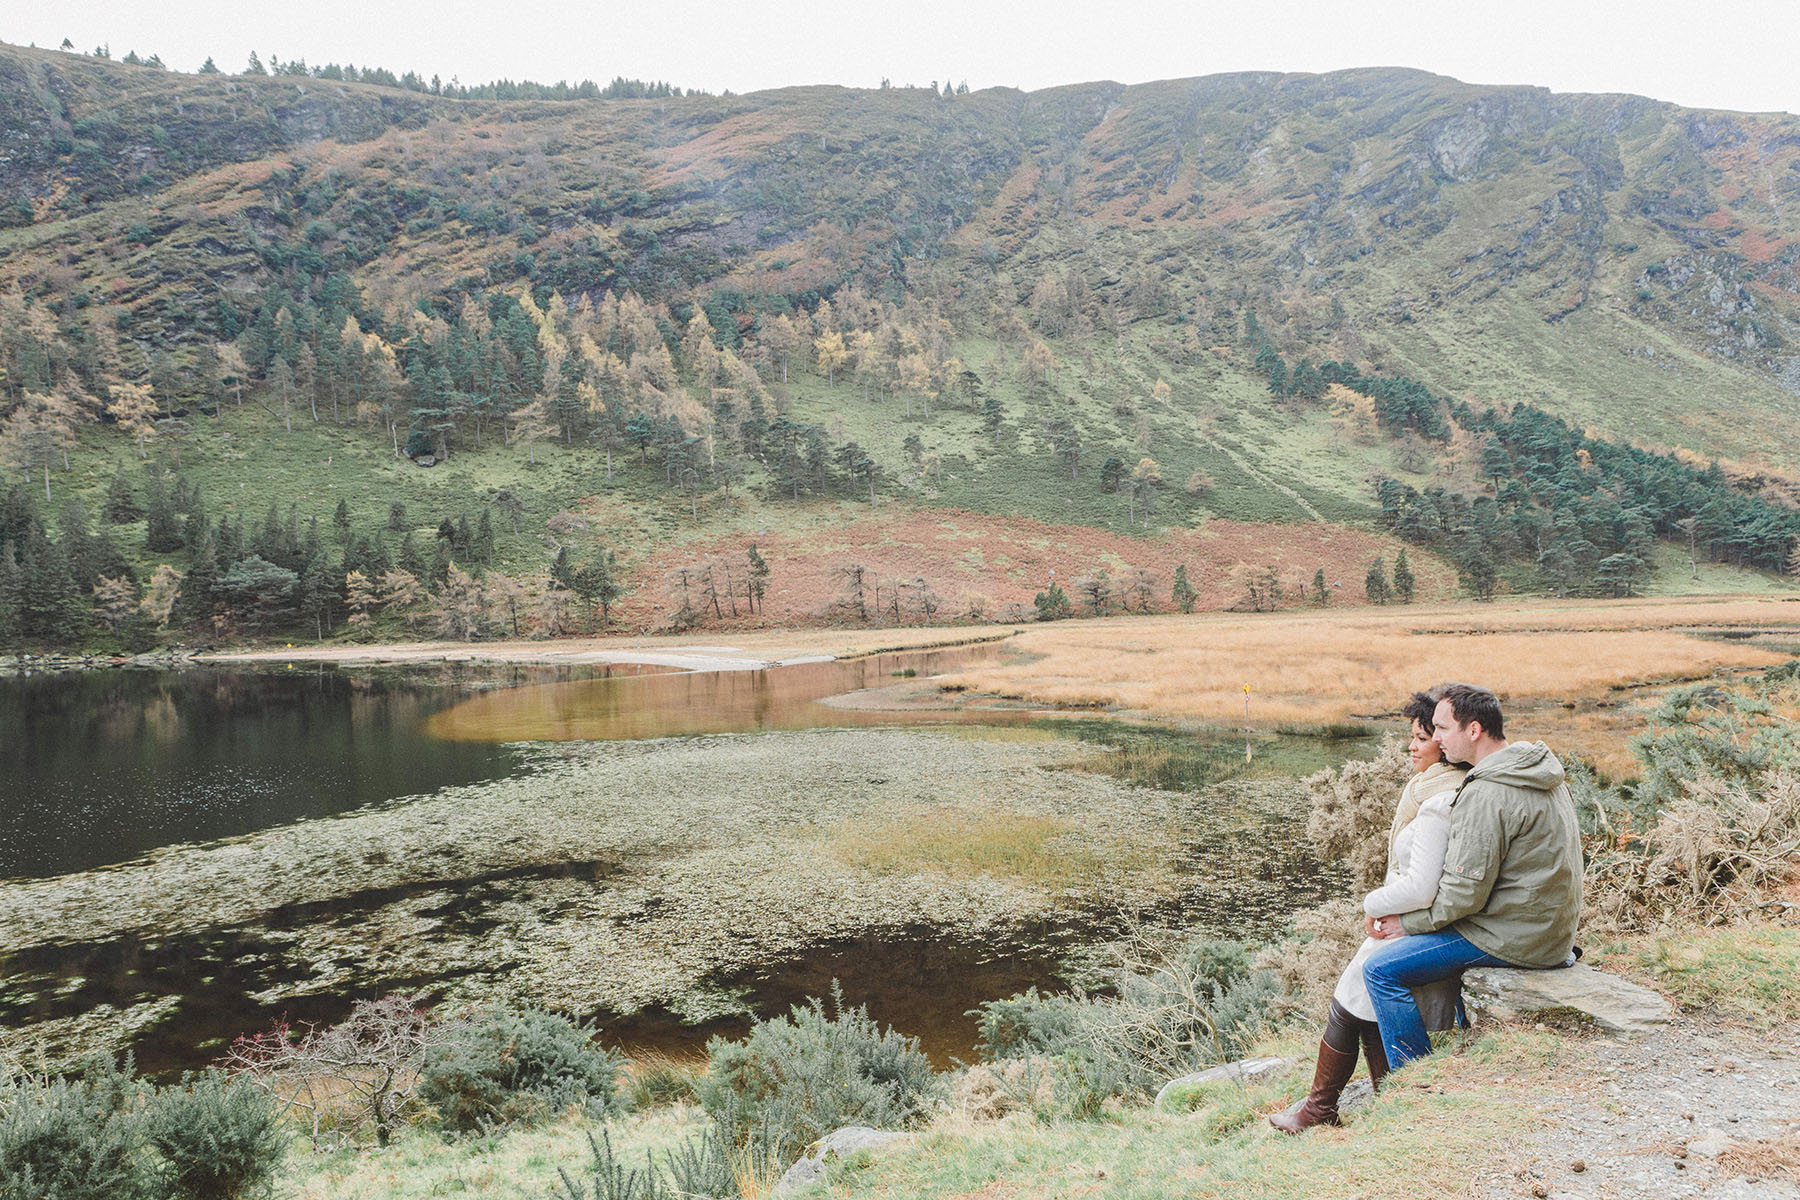 Glendalough engagement session captured by award winning wedding photographers Wonder & Magic